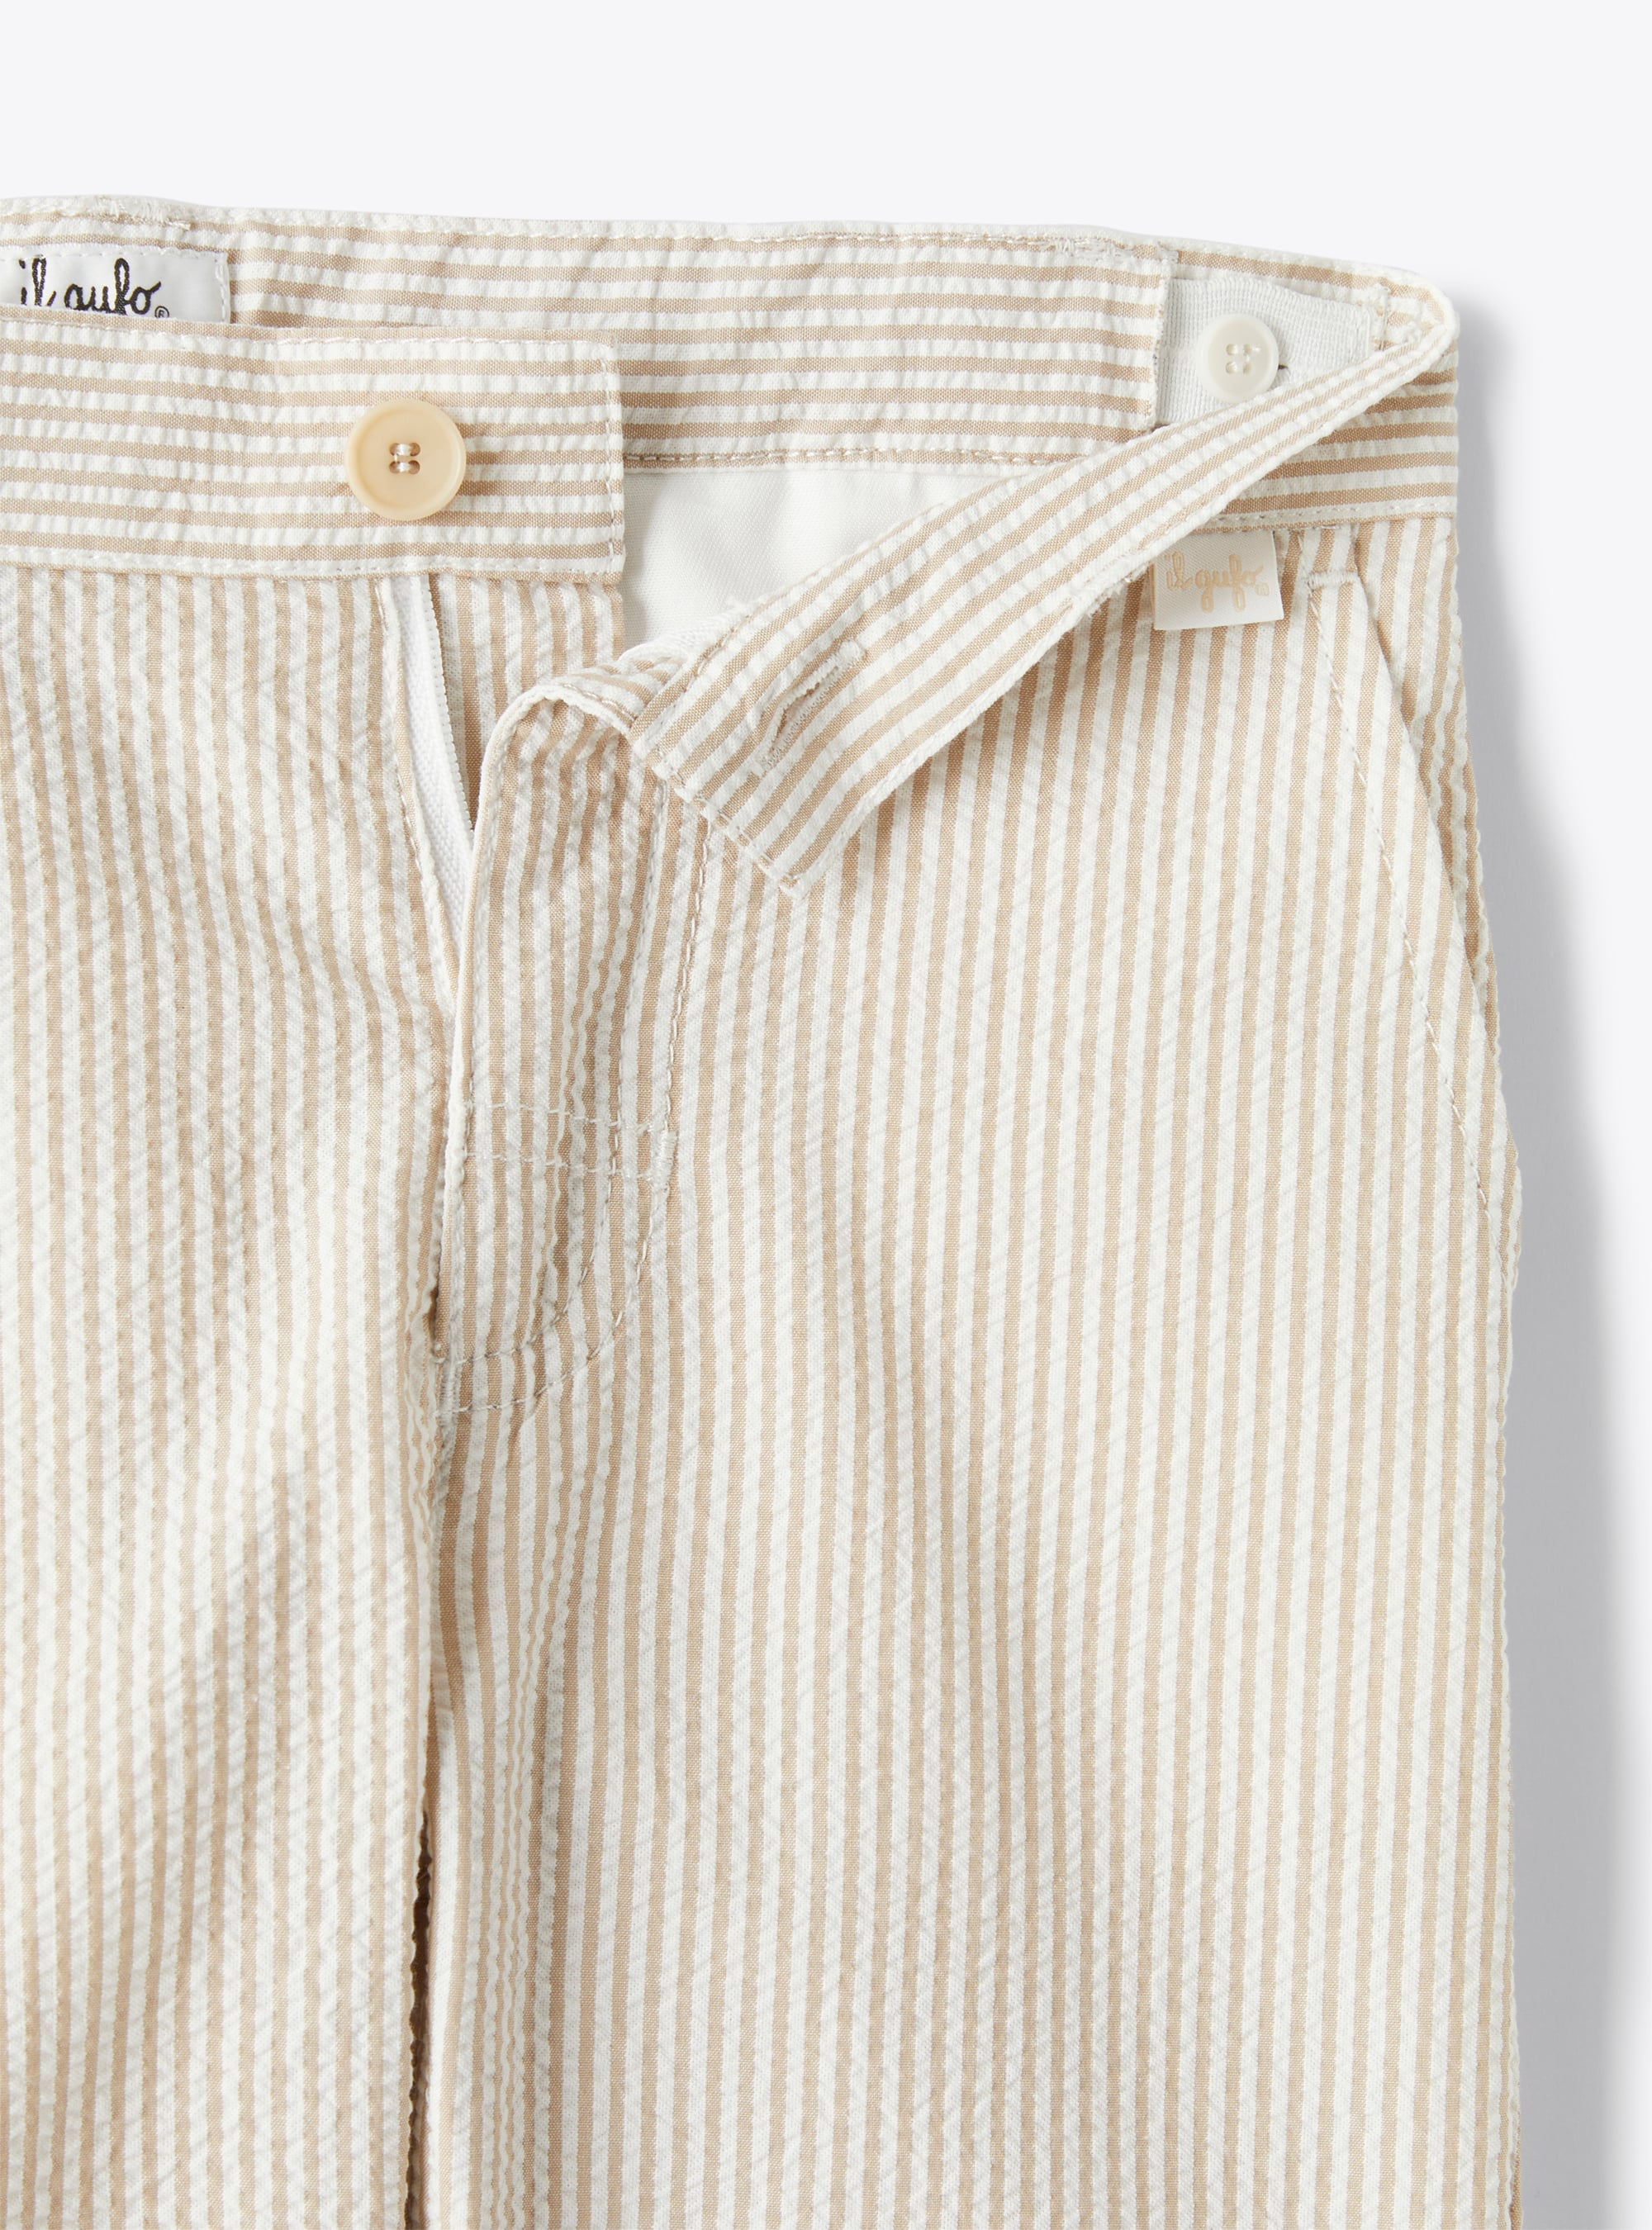 Long trousers in beige-&-white striped seersucker - Beige | Il Gufo